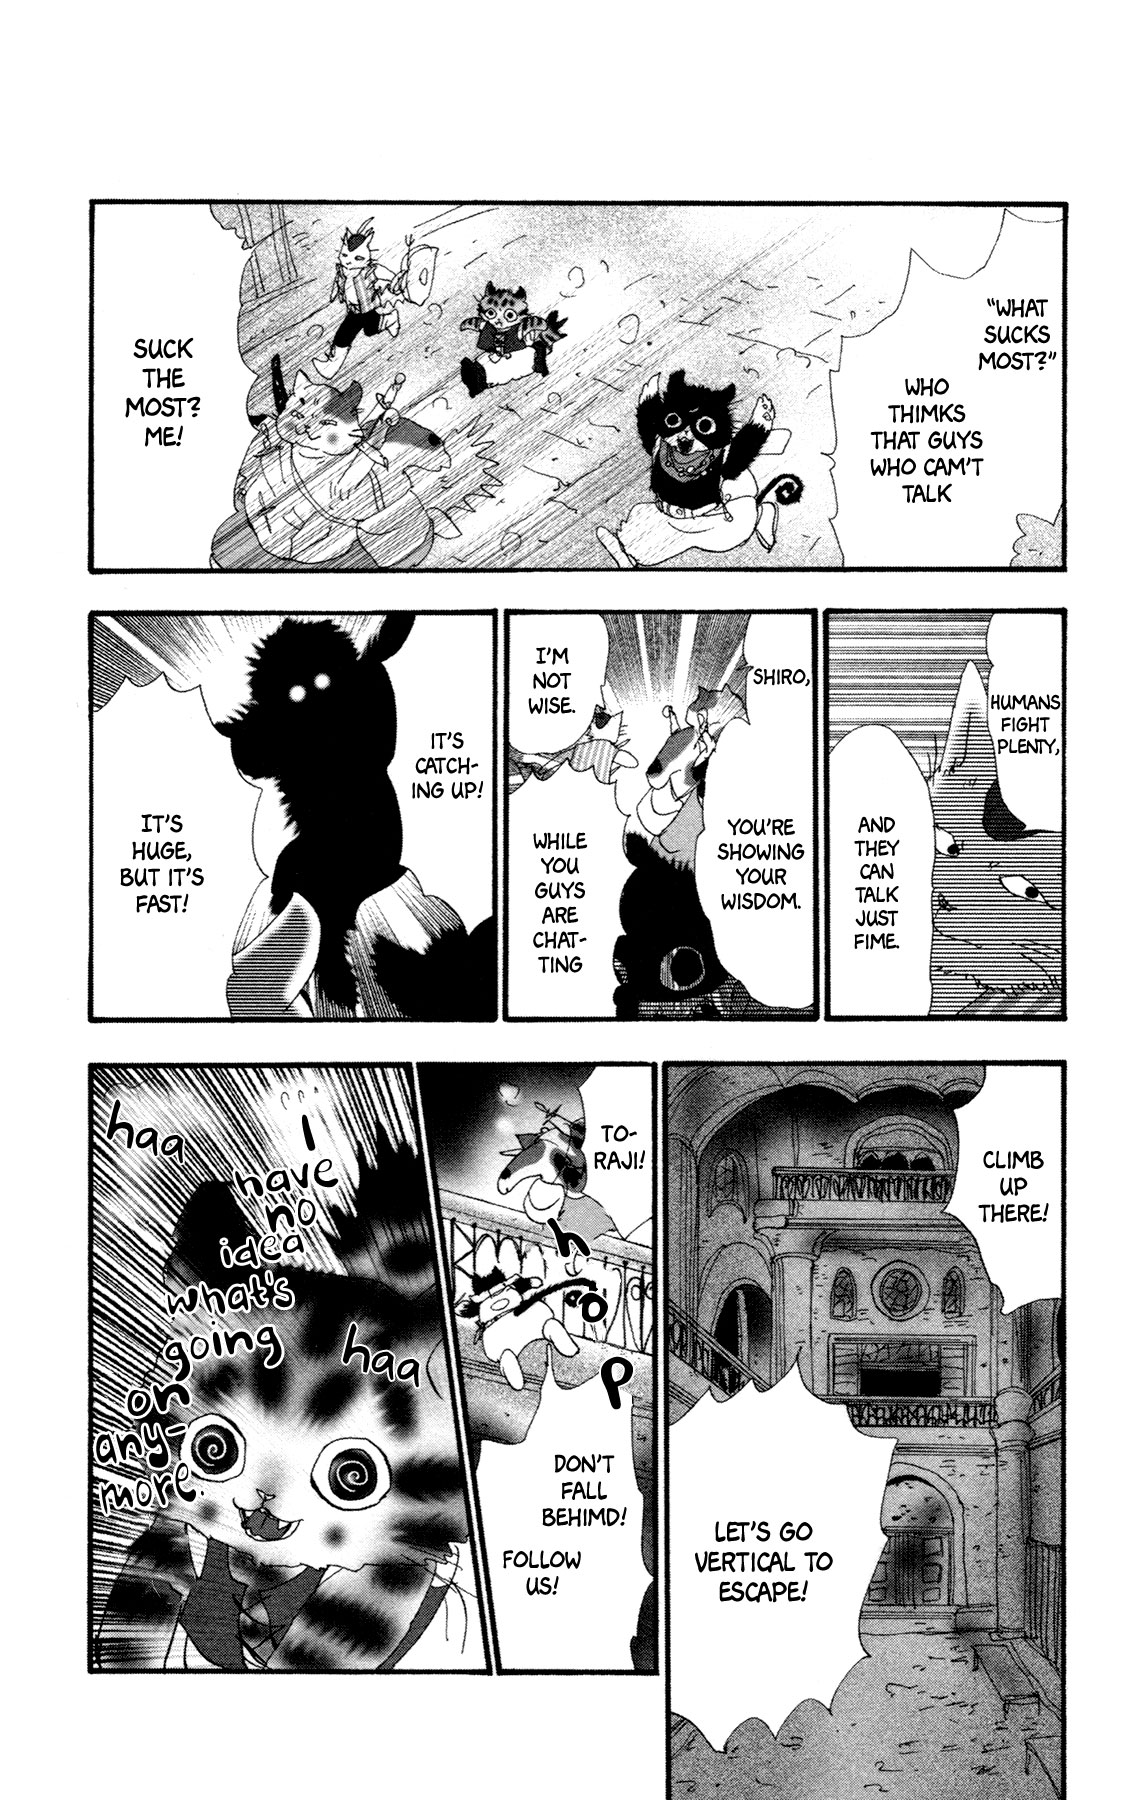 Neko Mix Genkitan Toraji Vol. 3 Ch. 11 The Dog, the Cat, and the Magic Mouse?